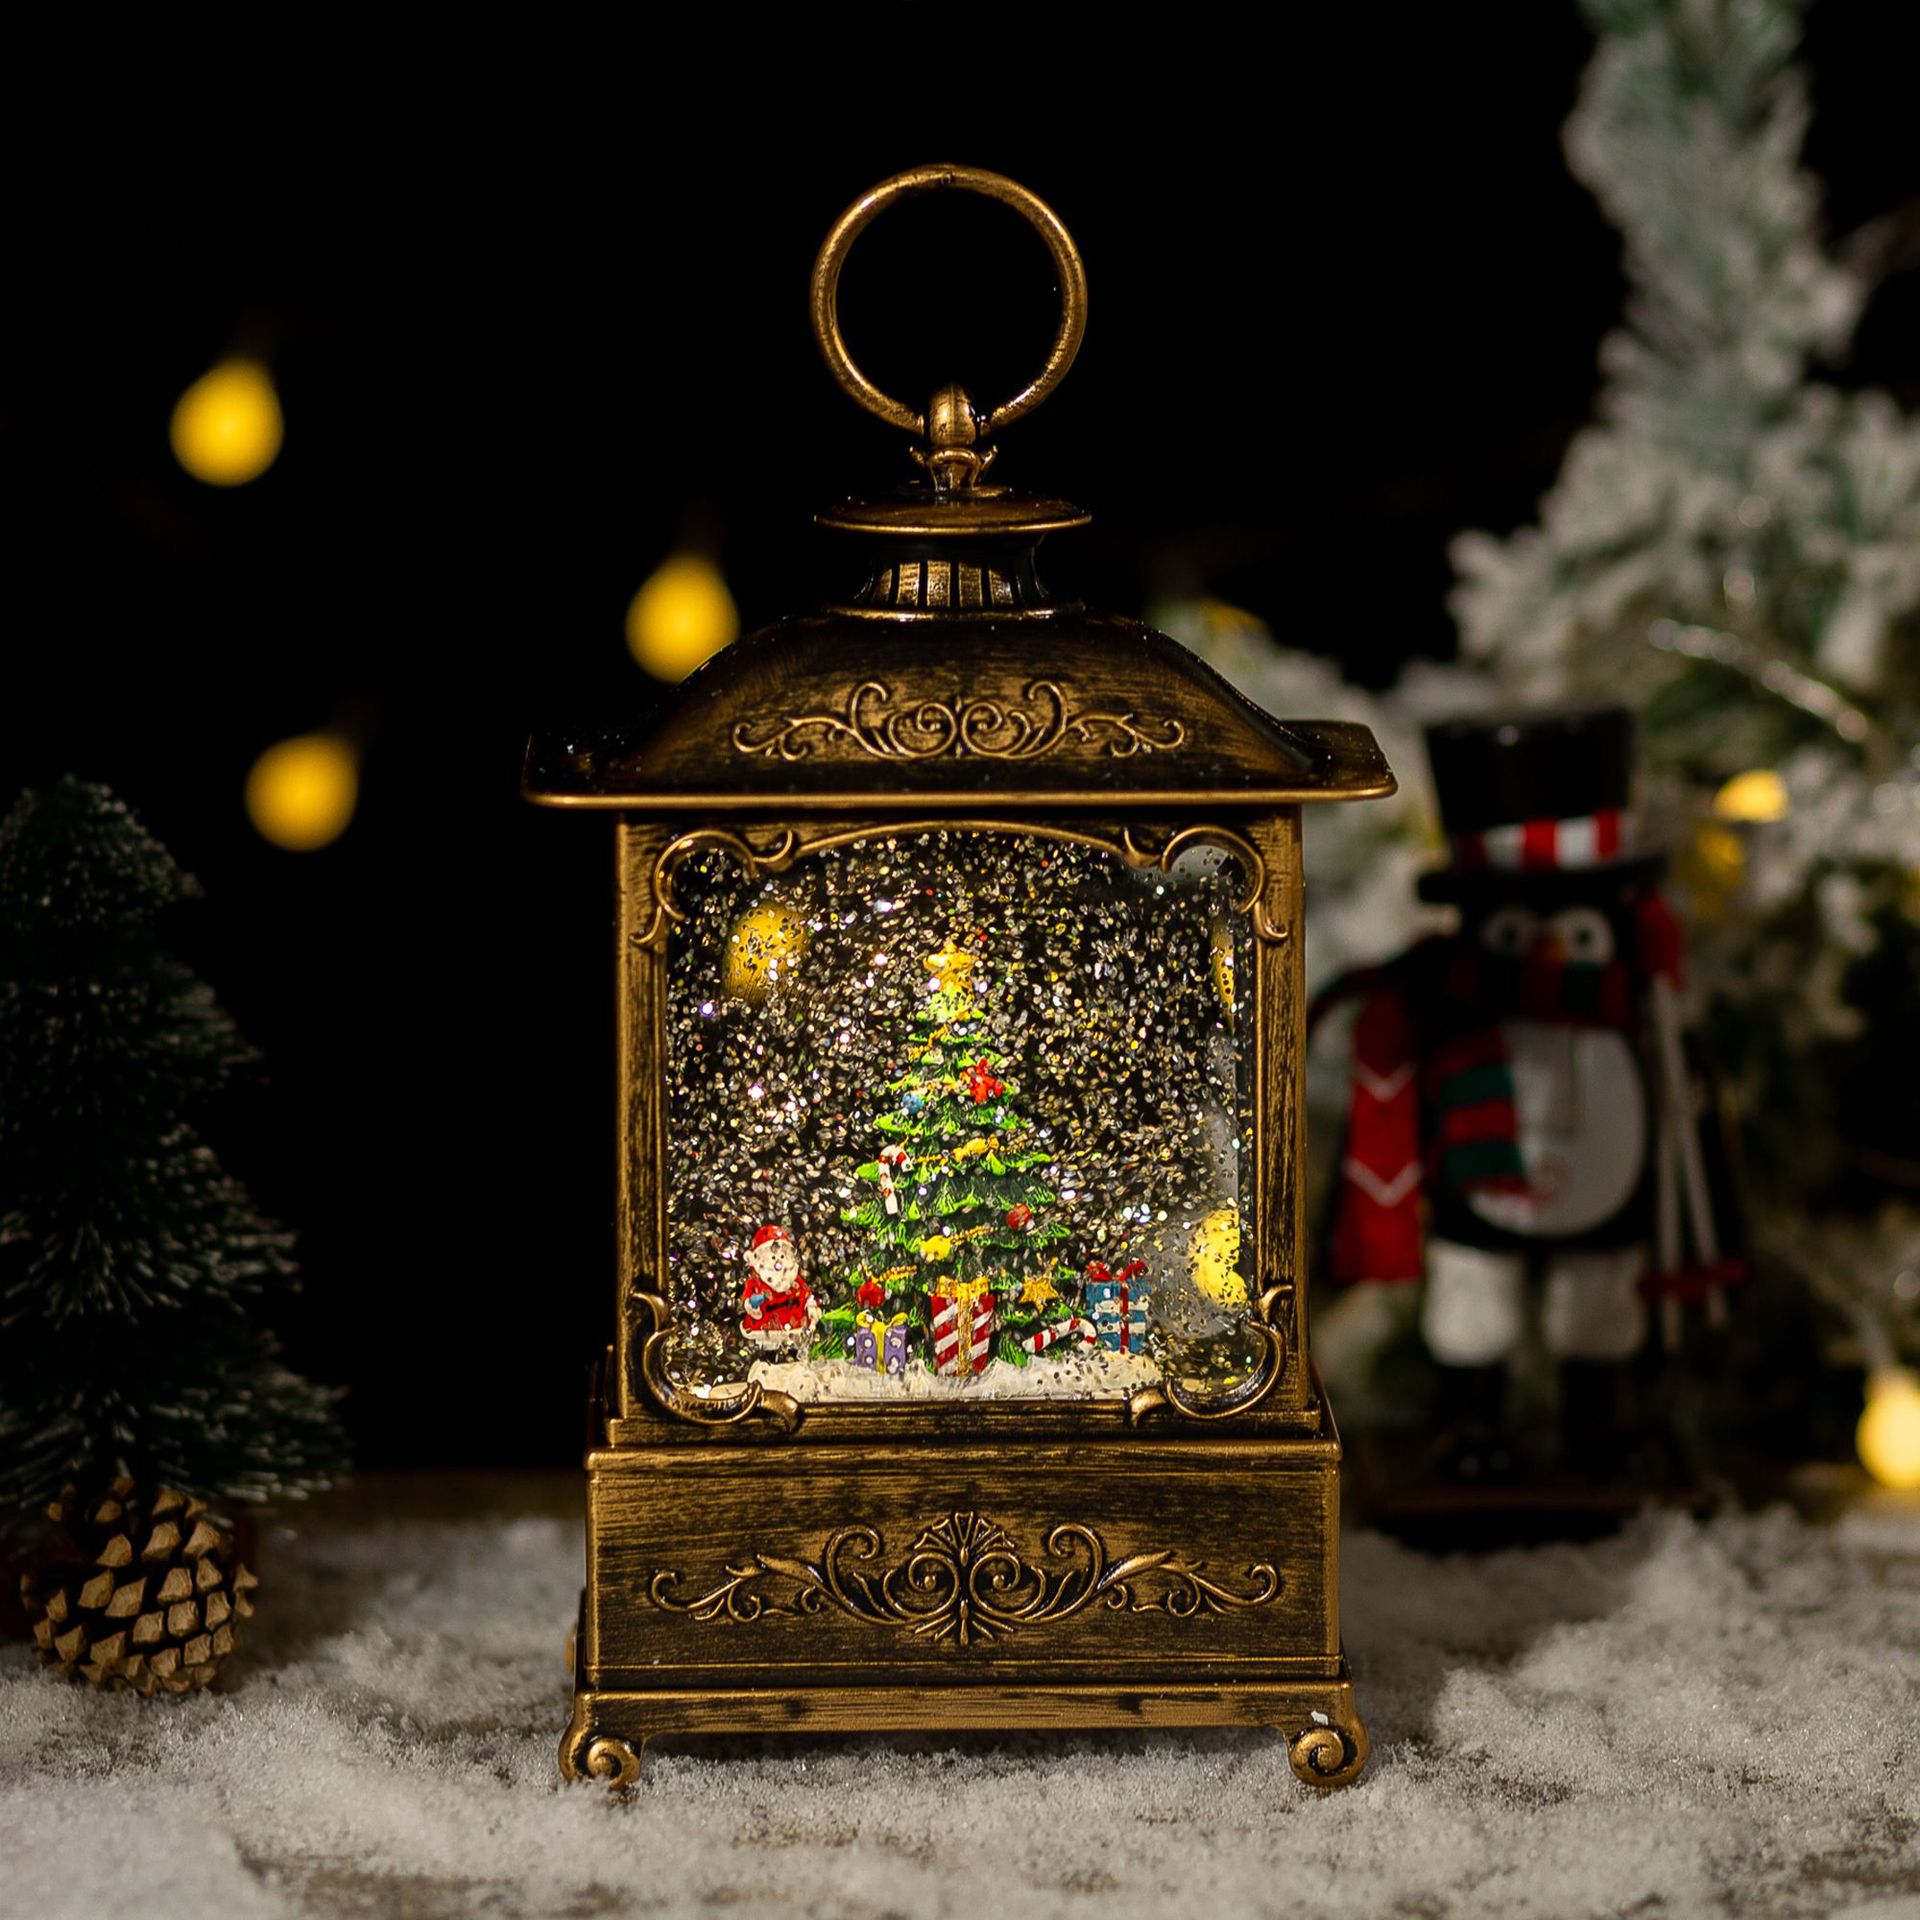 圣诞节装饰品桌面摆件风灯圣诞水晶灯音乐盒创意儿童生日圣诞礼物